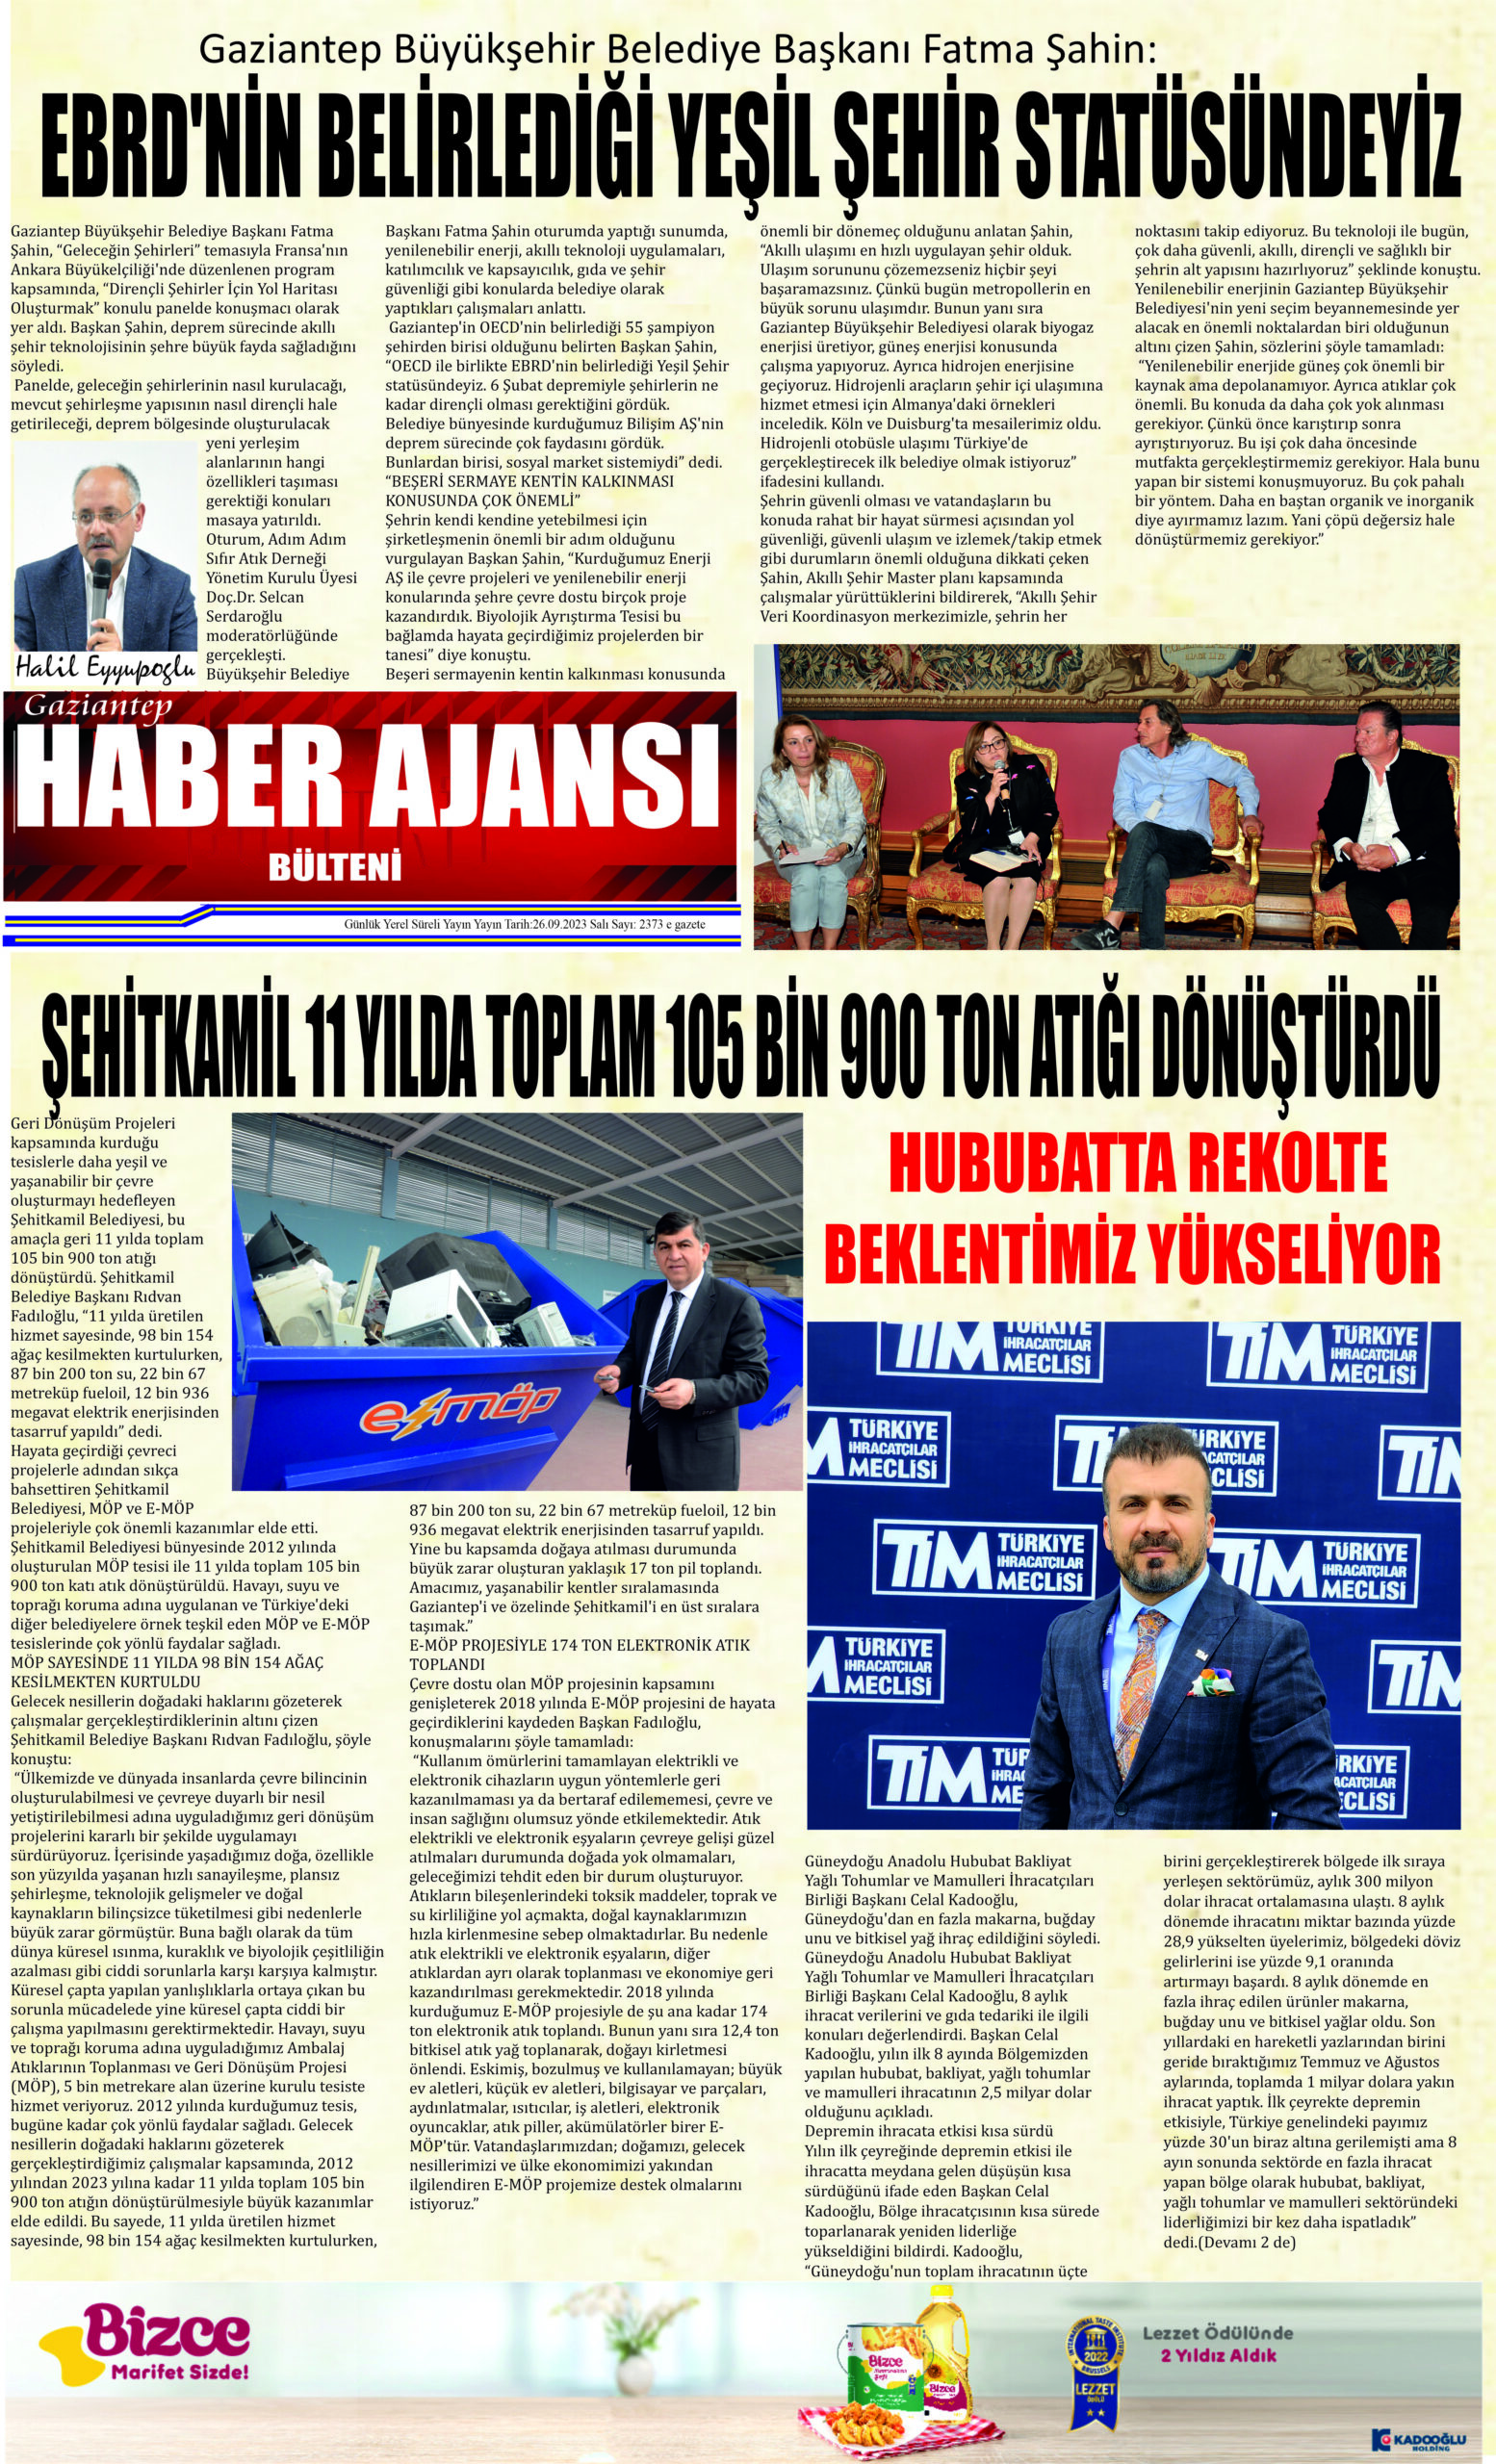 Gaziantep Haber Ajansı Bülteni Salı 26.09.2023 e gazete